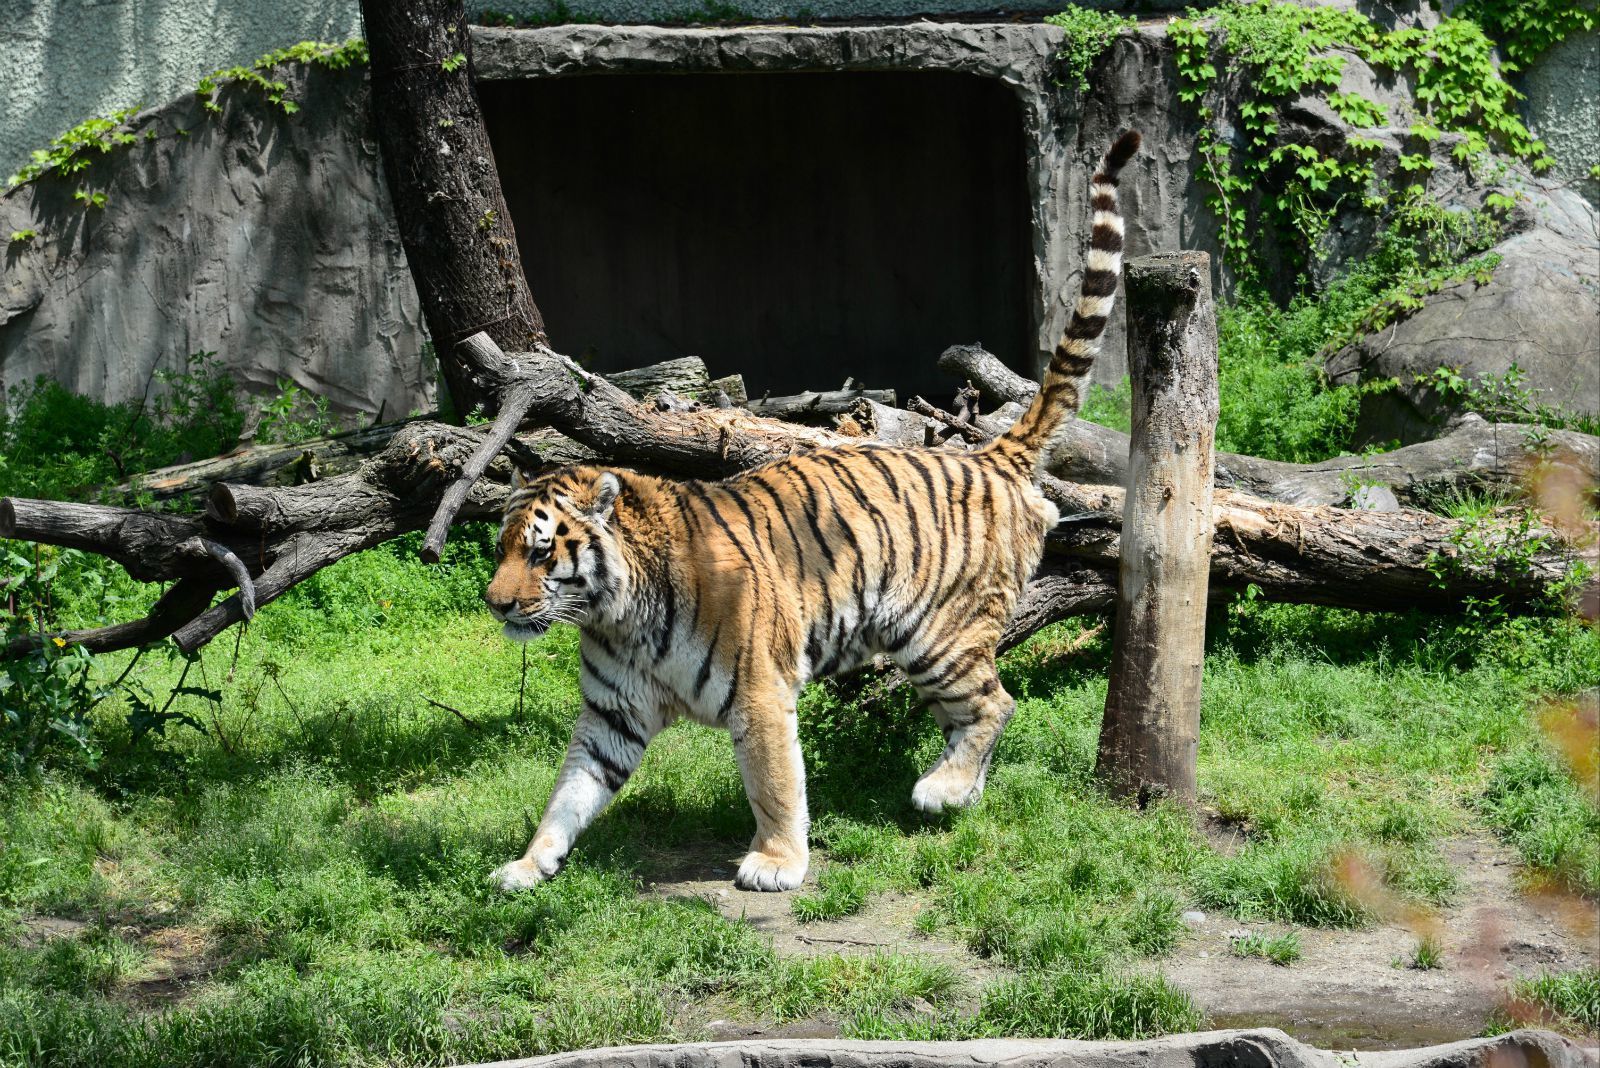 老虎很干净,也很活跃,一直在走动 大阪天王寺动物园